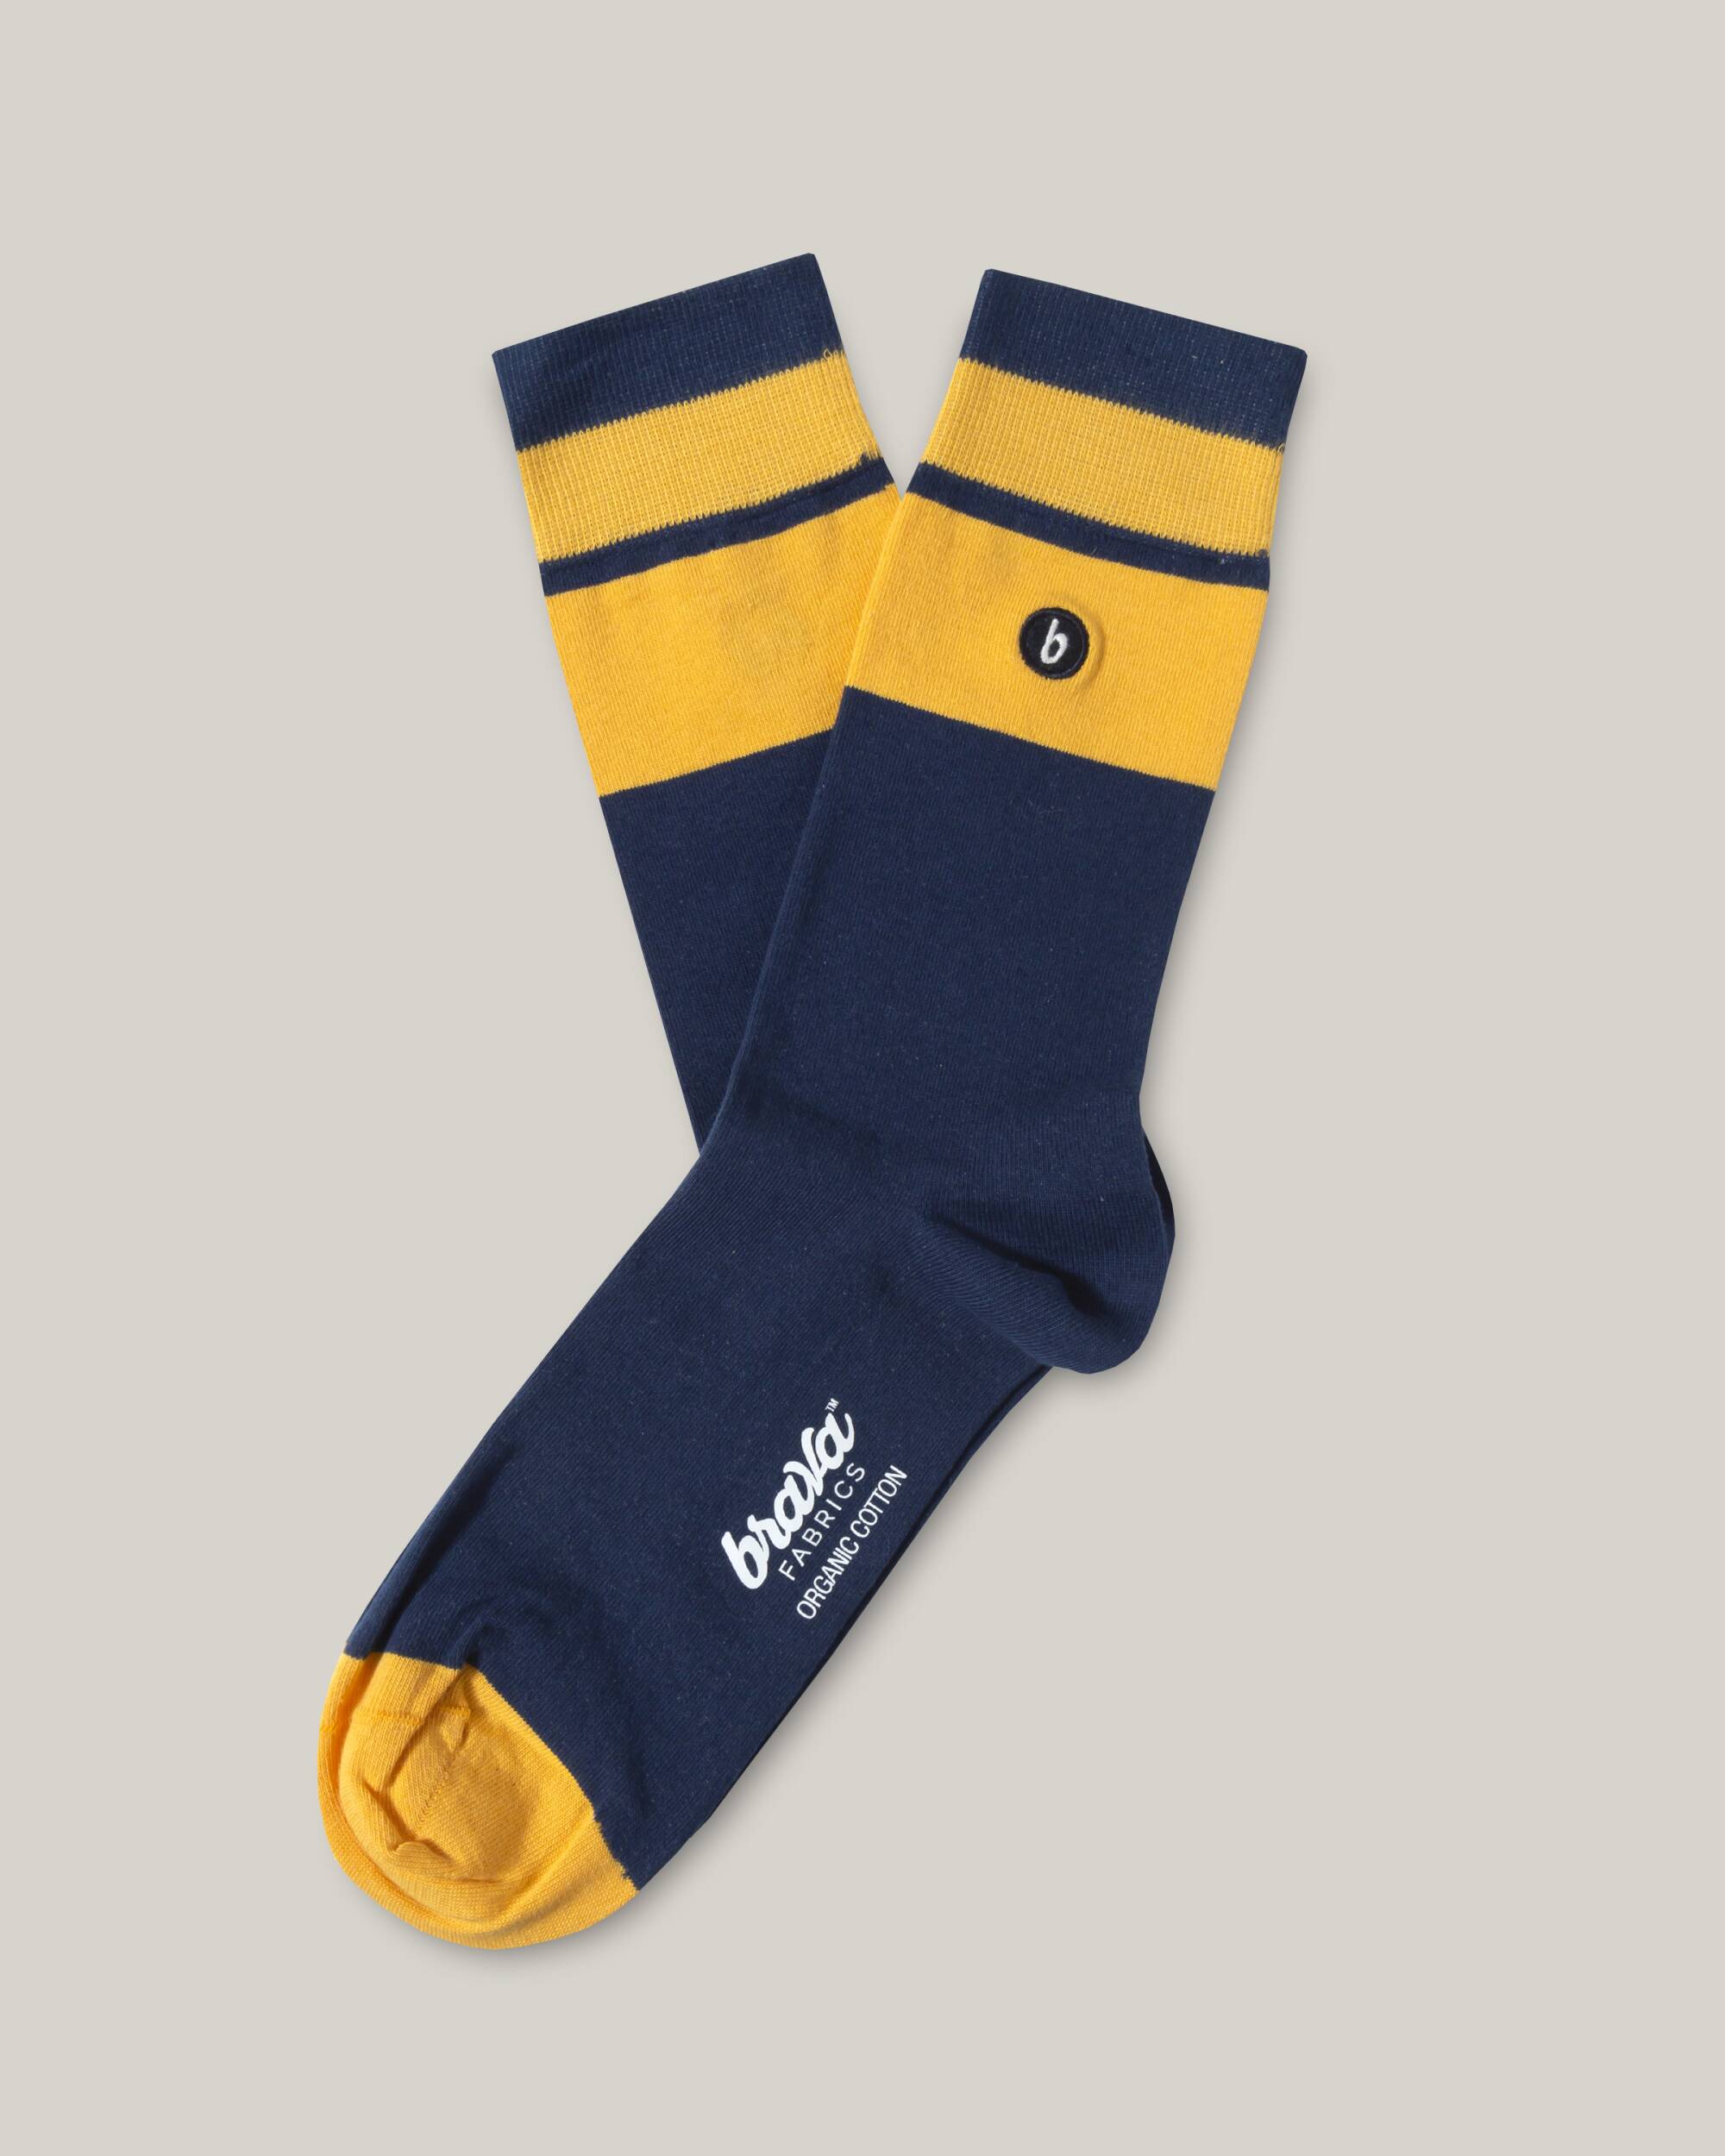 Socken in navy blau mit gelb aus 100% Bio - Baumwolle von Brava Fabrics